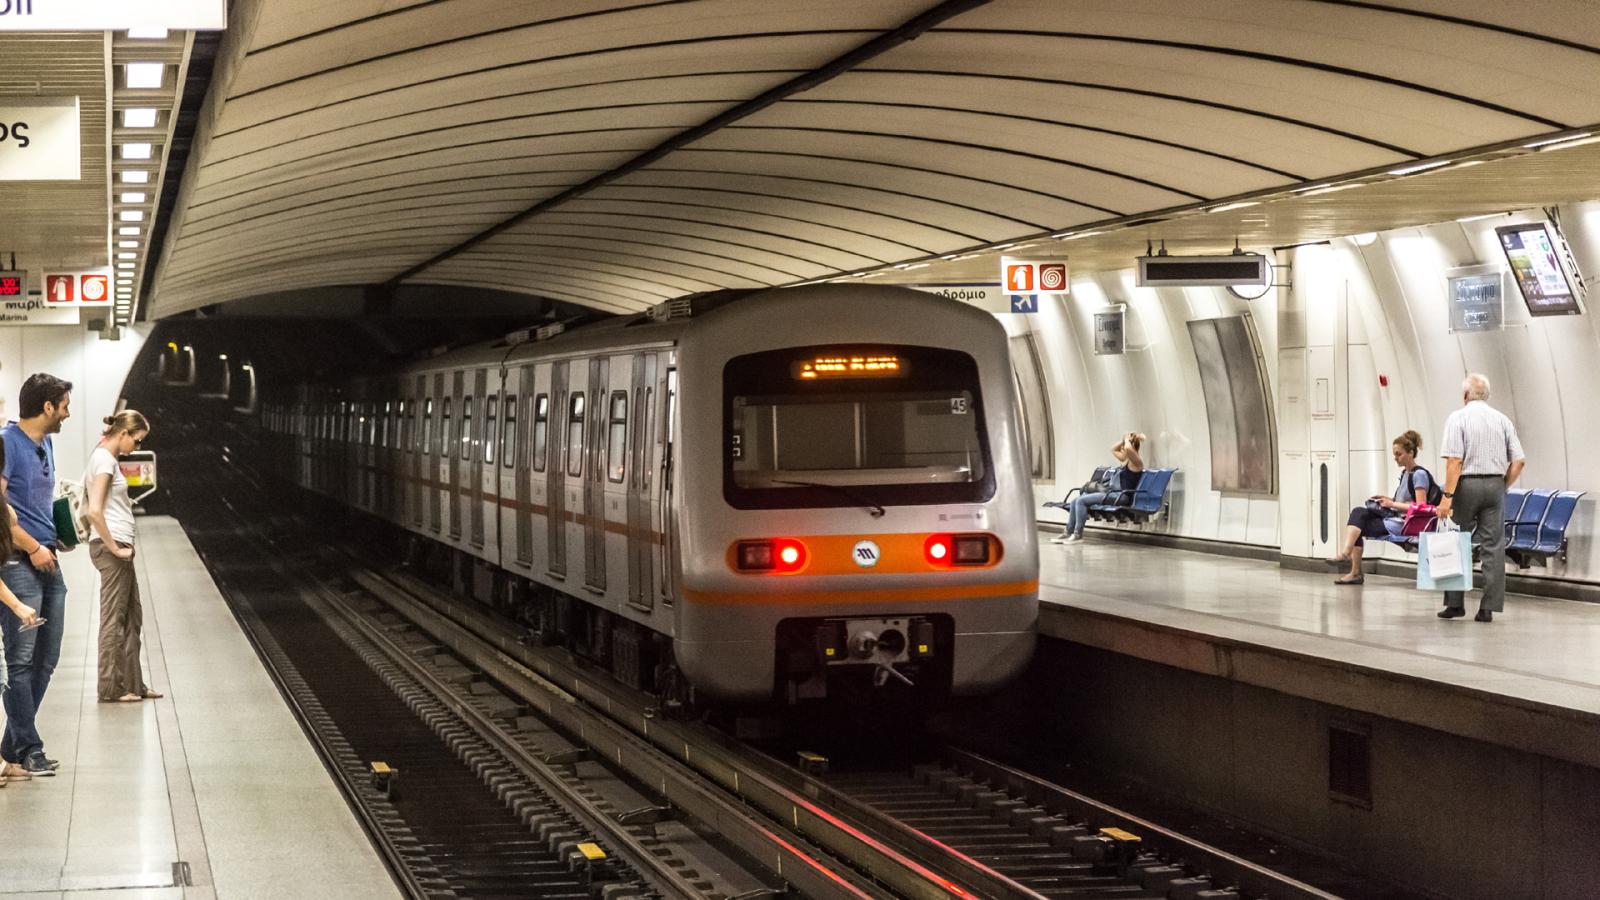 έρχονται 3 νέοι σταθμοί μετρό στην αθήνα -πού θα κατασκευαστούν